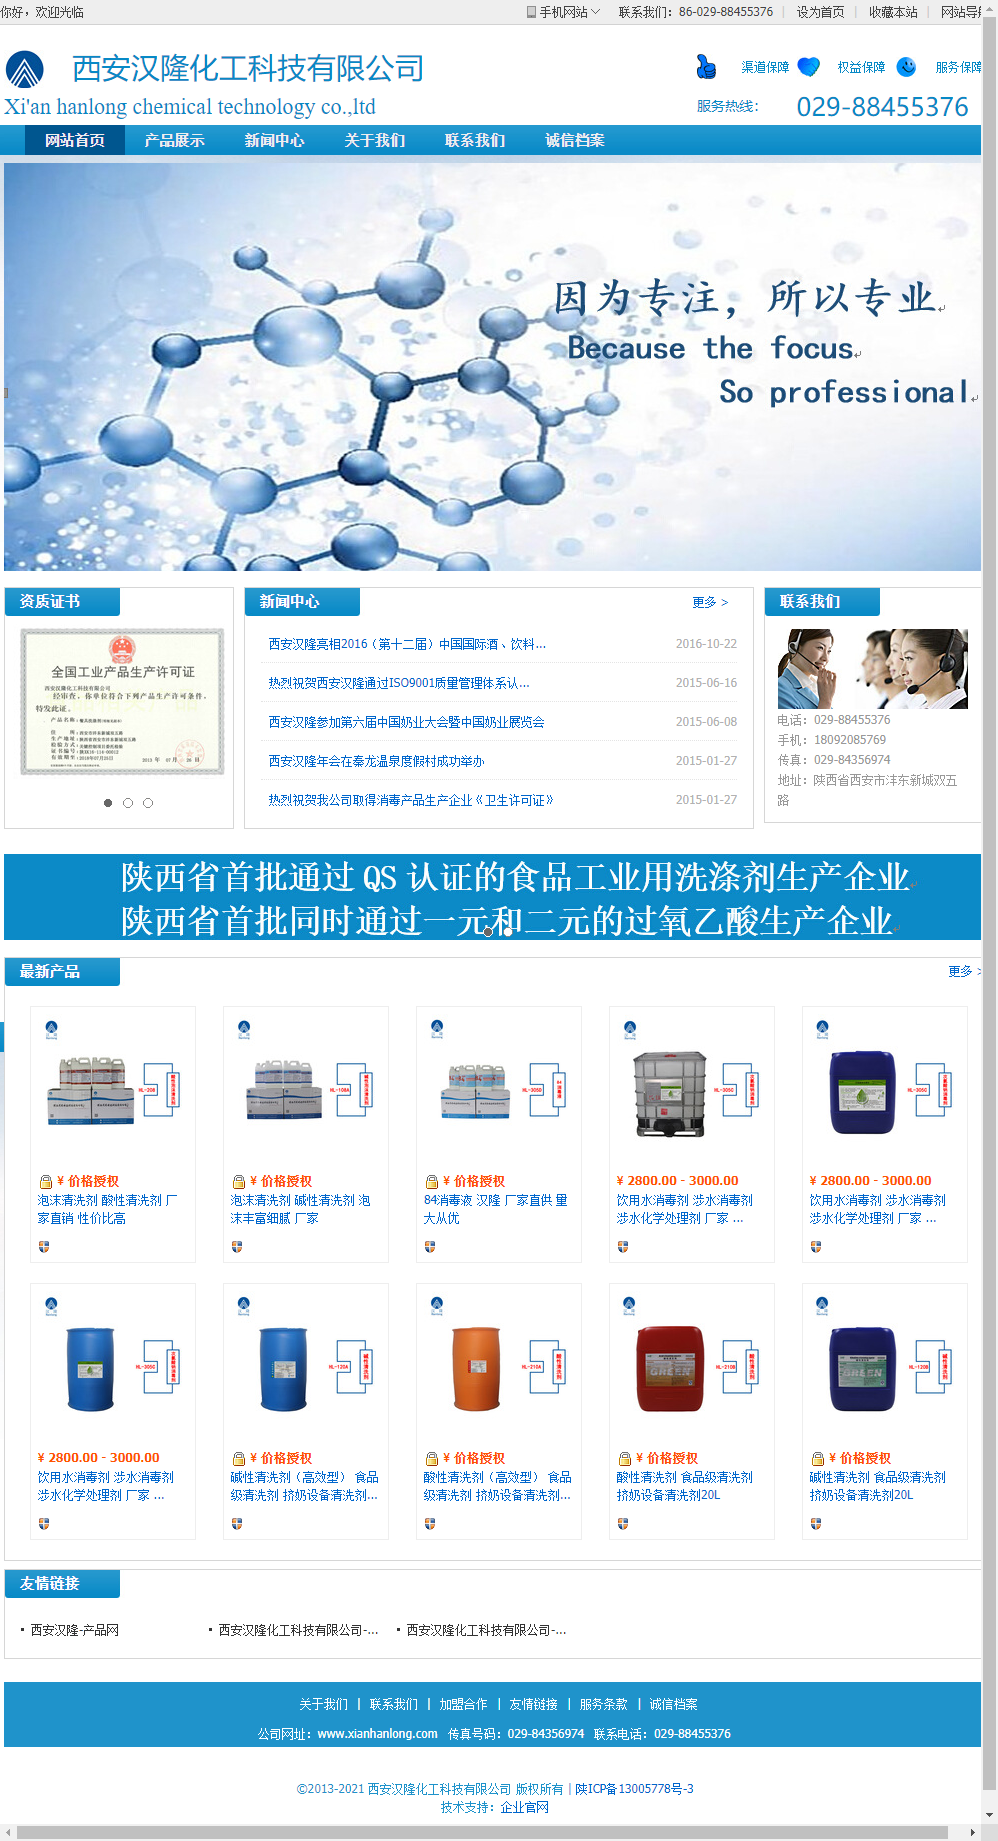 西安汉隆化工科技有限公司网站案例